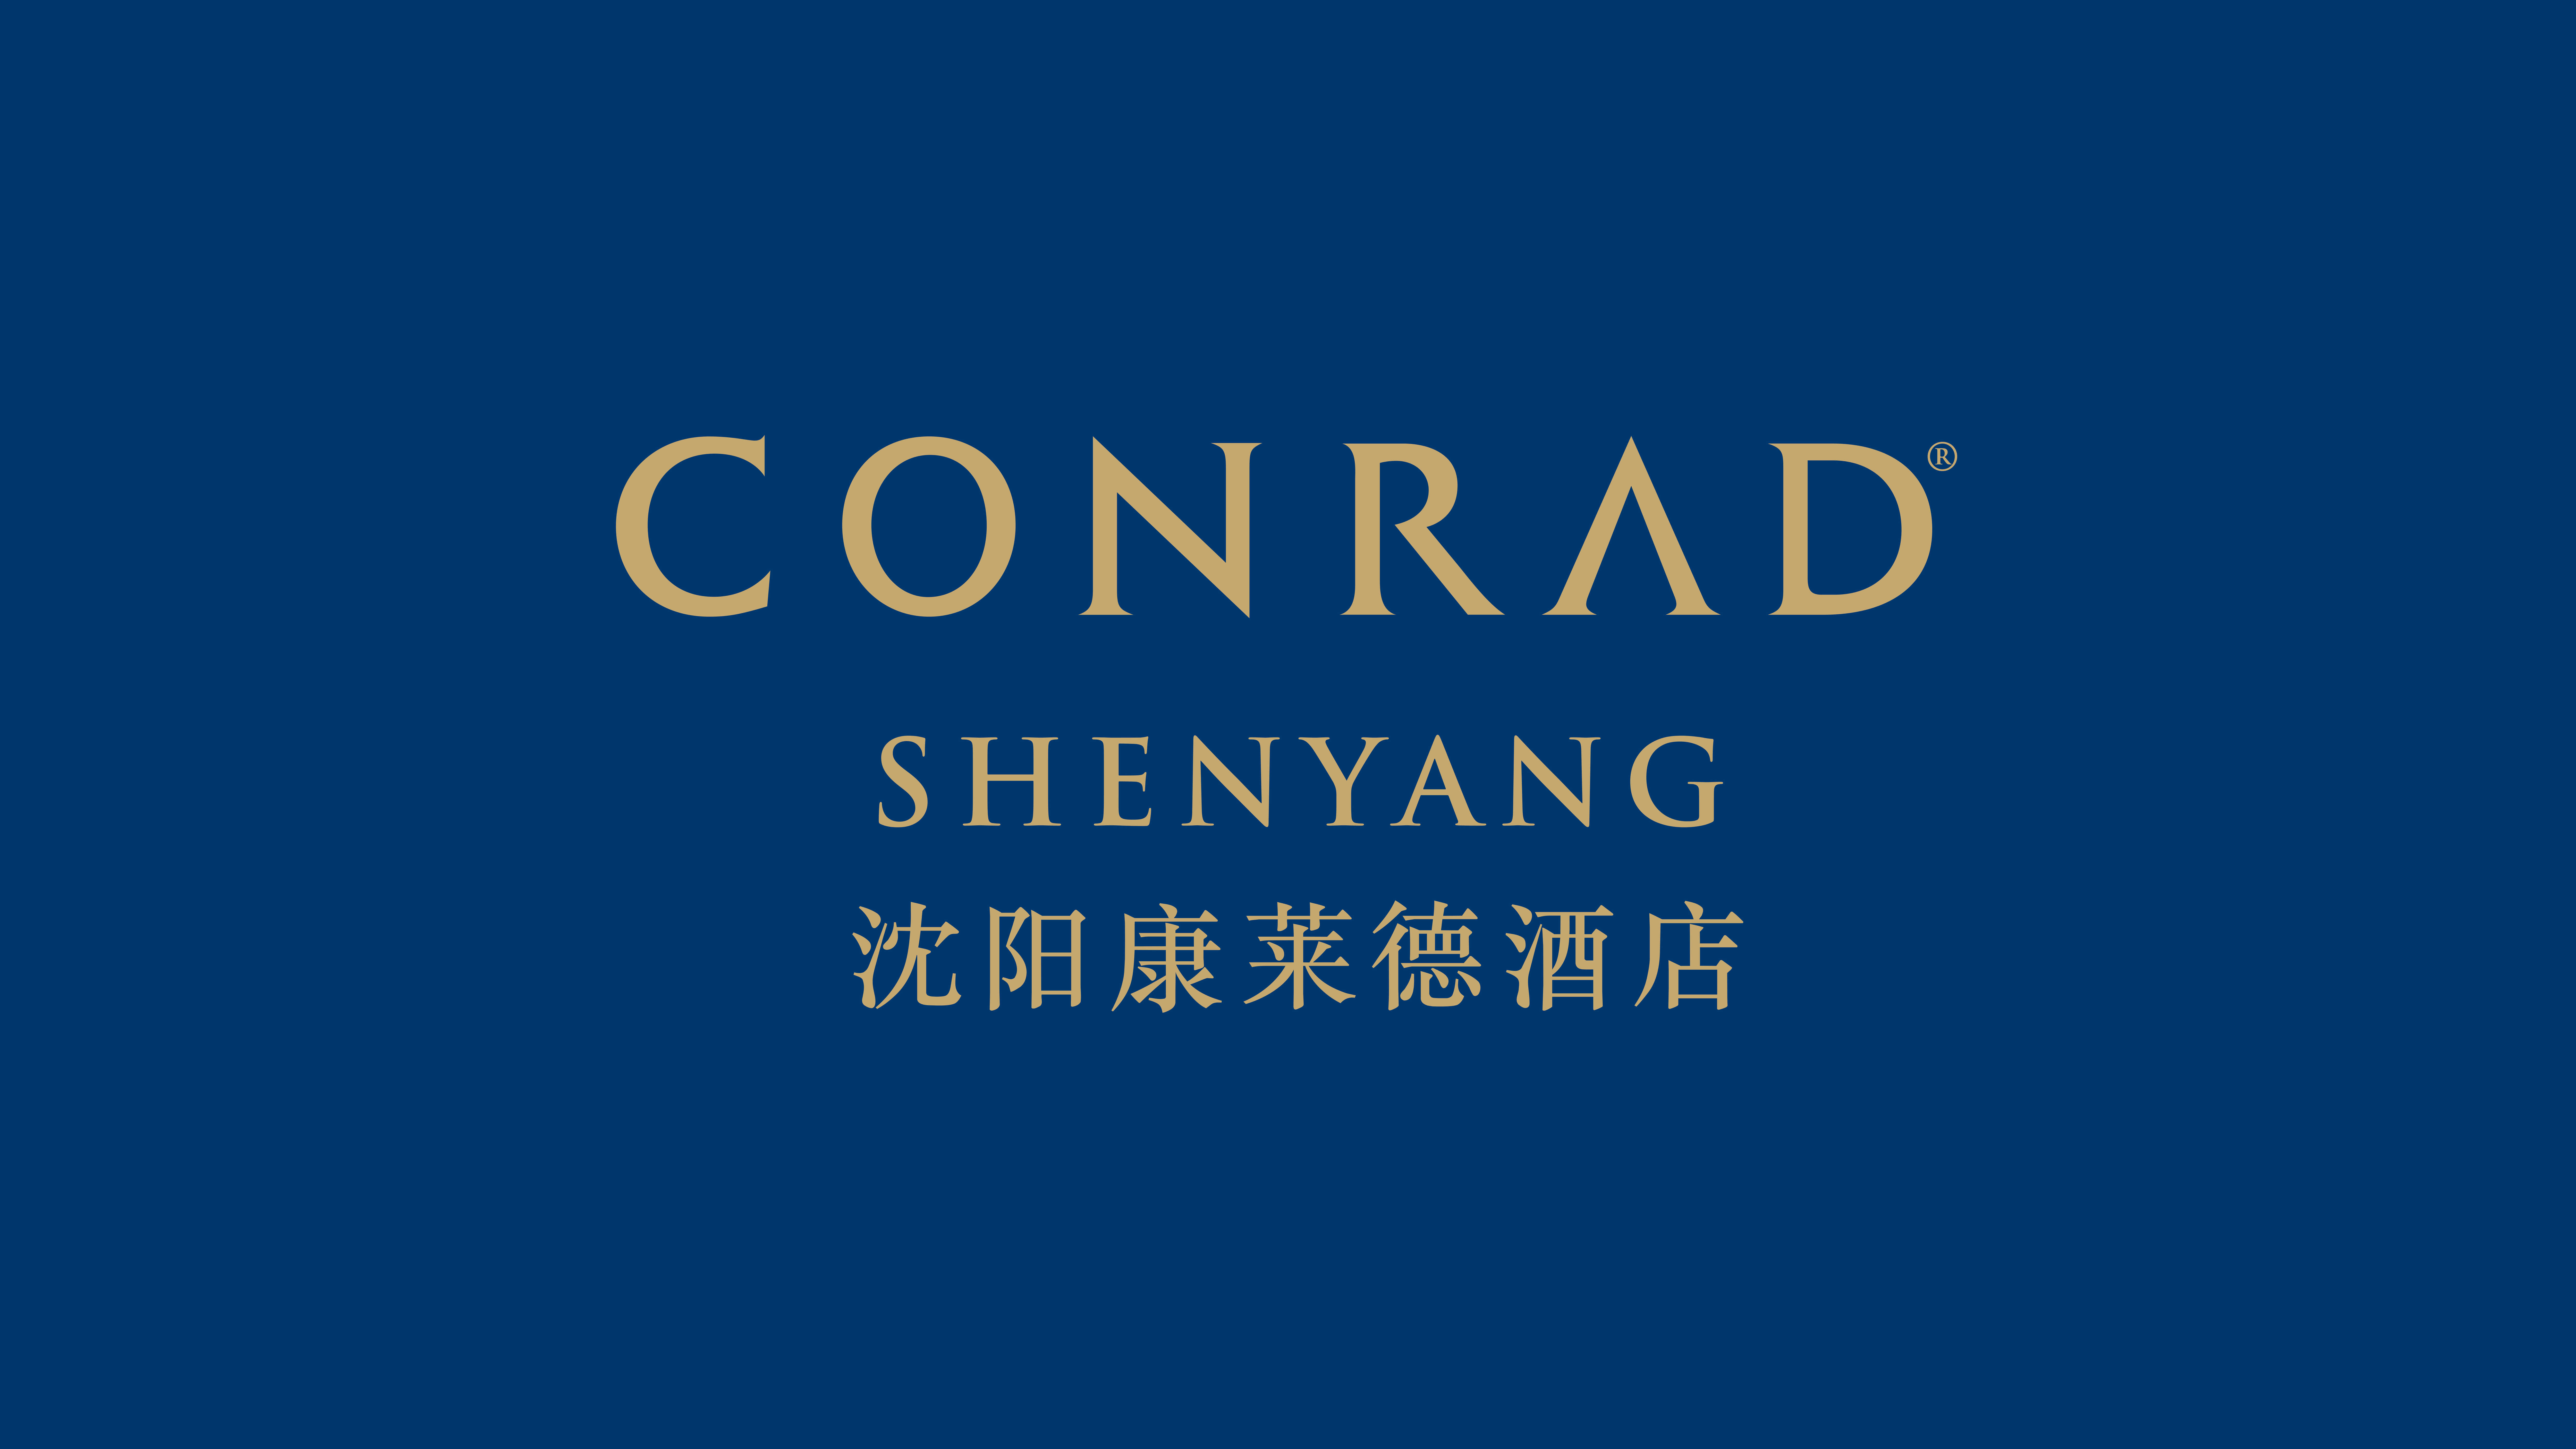 Conrad Shenyang